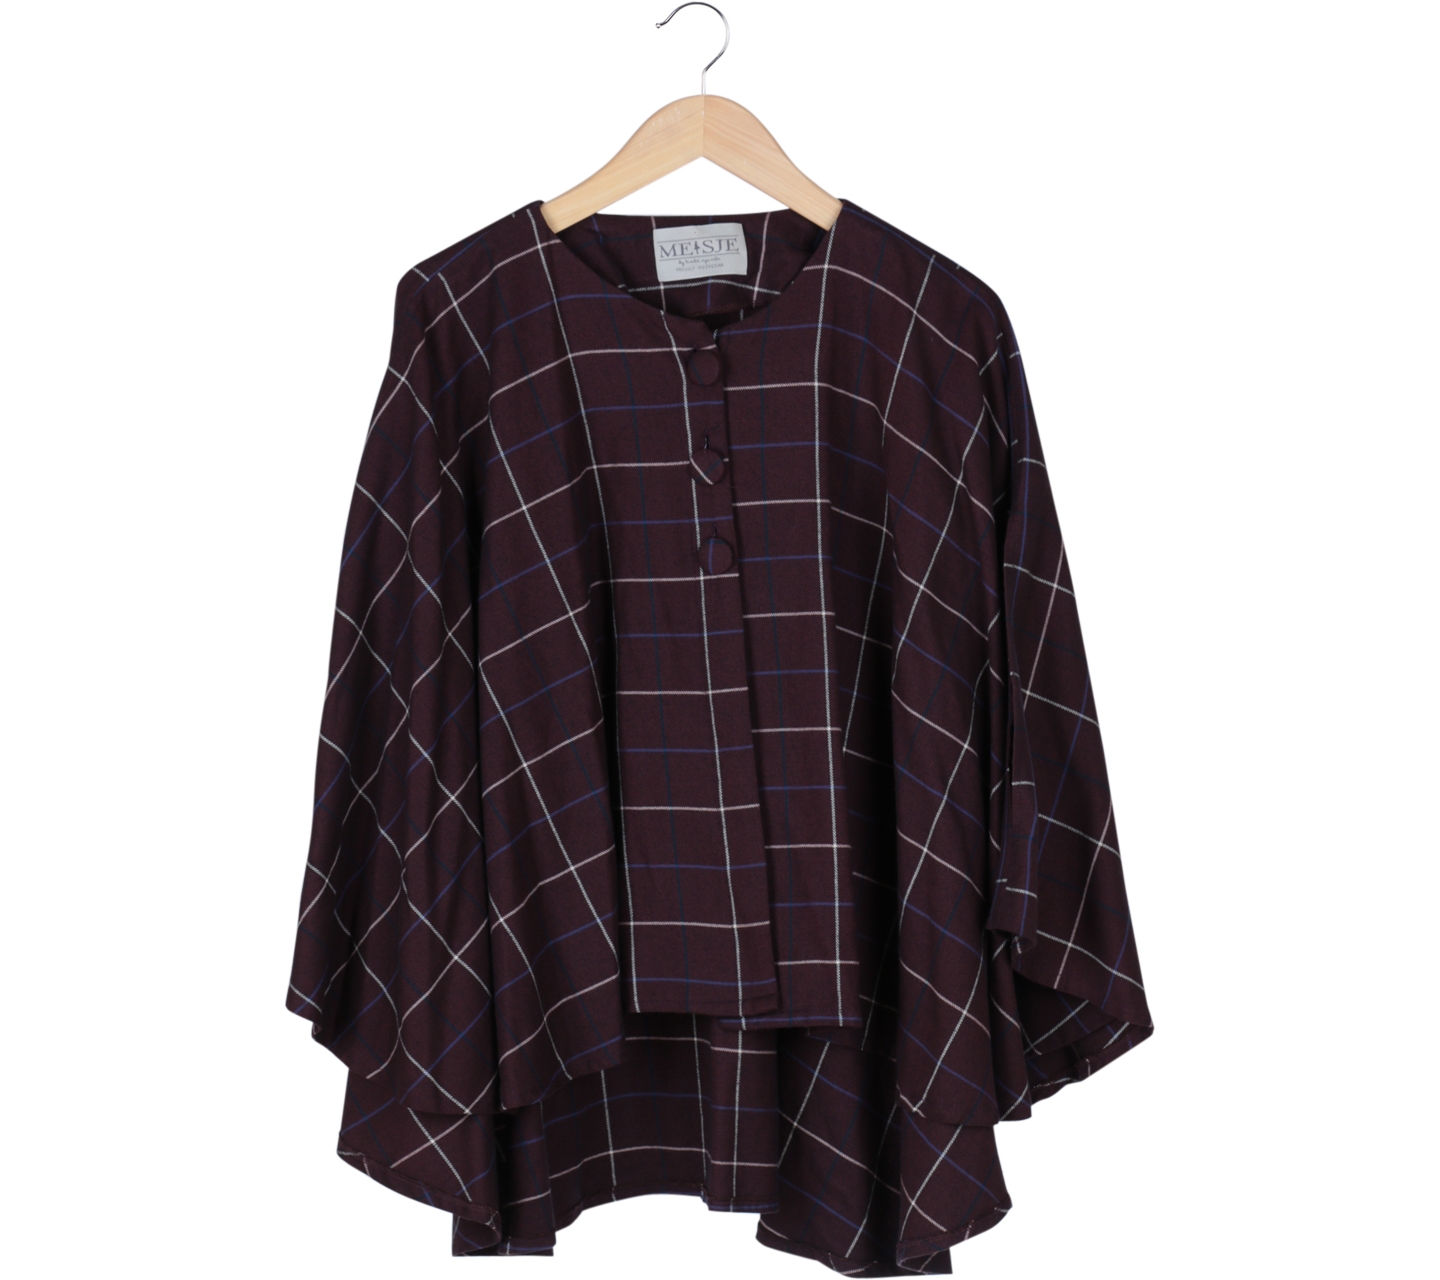 Meisje by Tantri Purple Square Patterned Outerwear